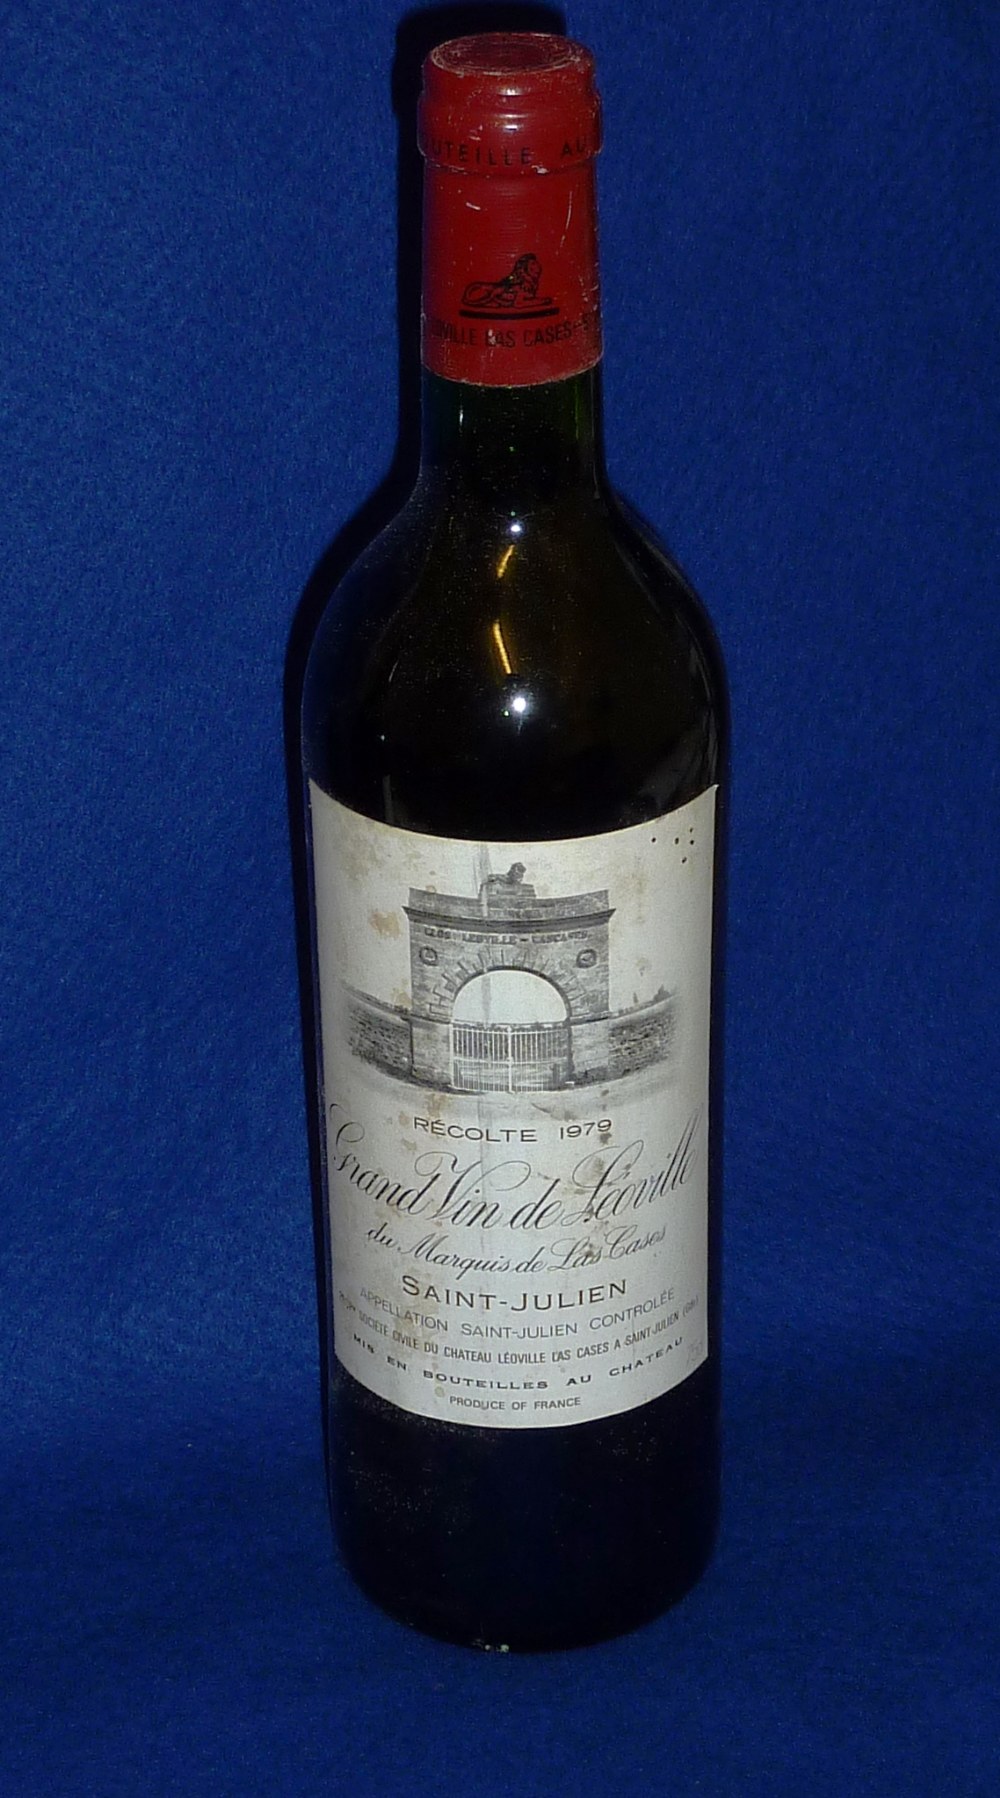 A Bottle of Recolte 1979 Grand Vin De Leoville, Saint-Julien